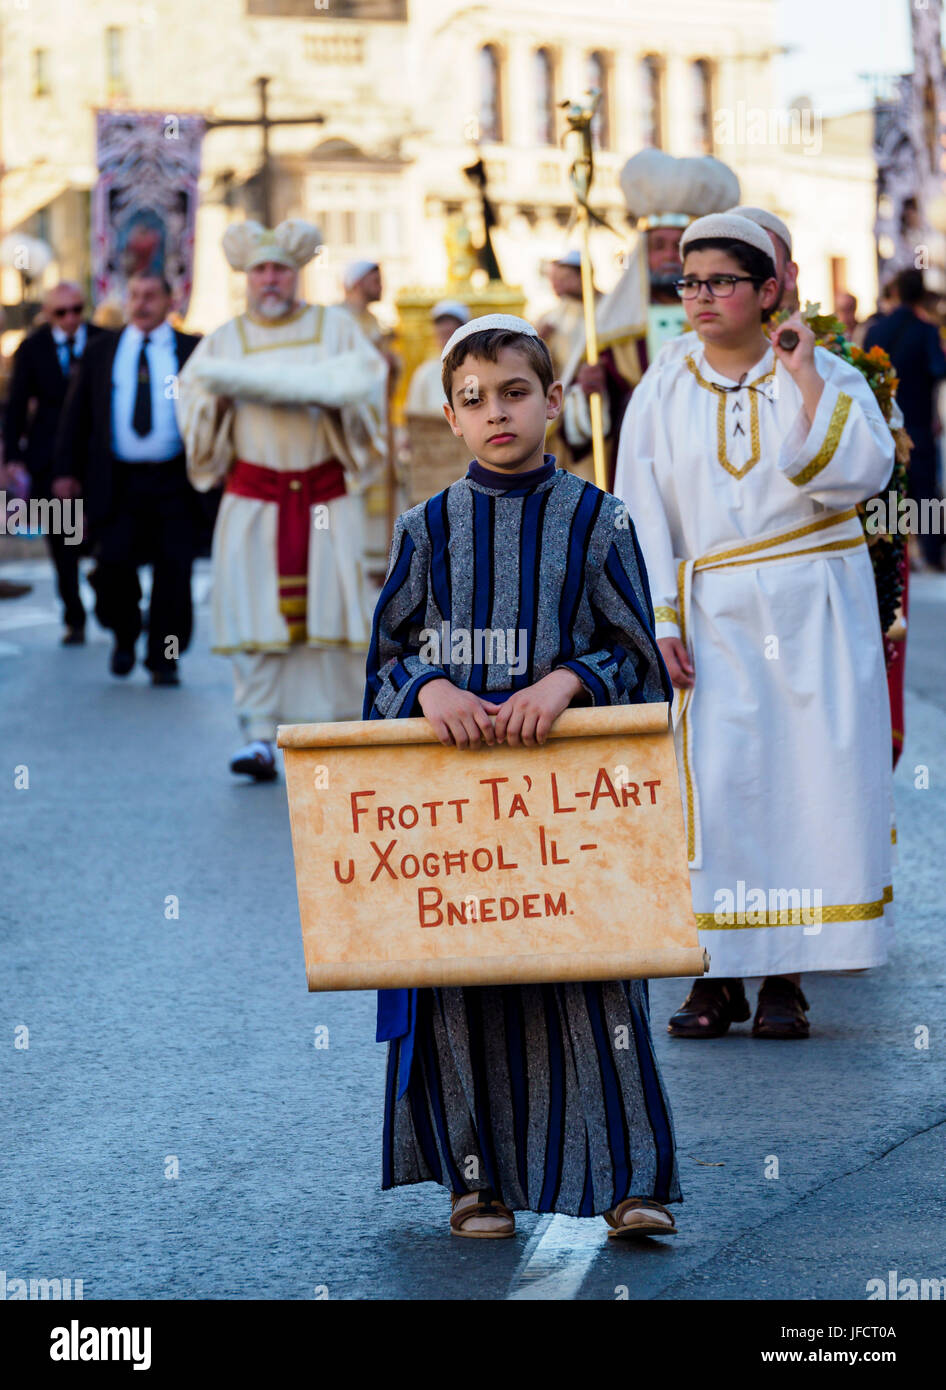 Einwohner der Stadt Zejtun / Malta hatte ihre traditionellen Karfreitags-Prozession / religiöse Kirche parade vor der Kirche Stockfoto